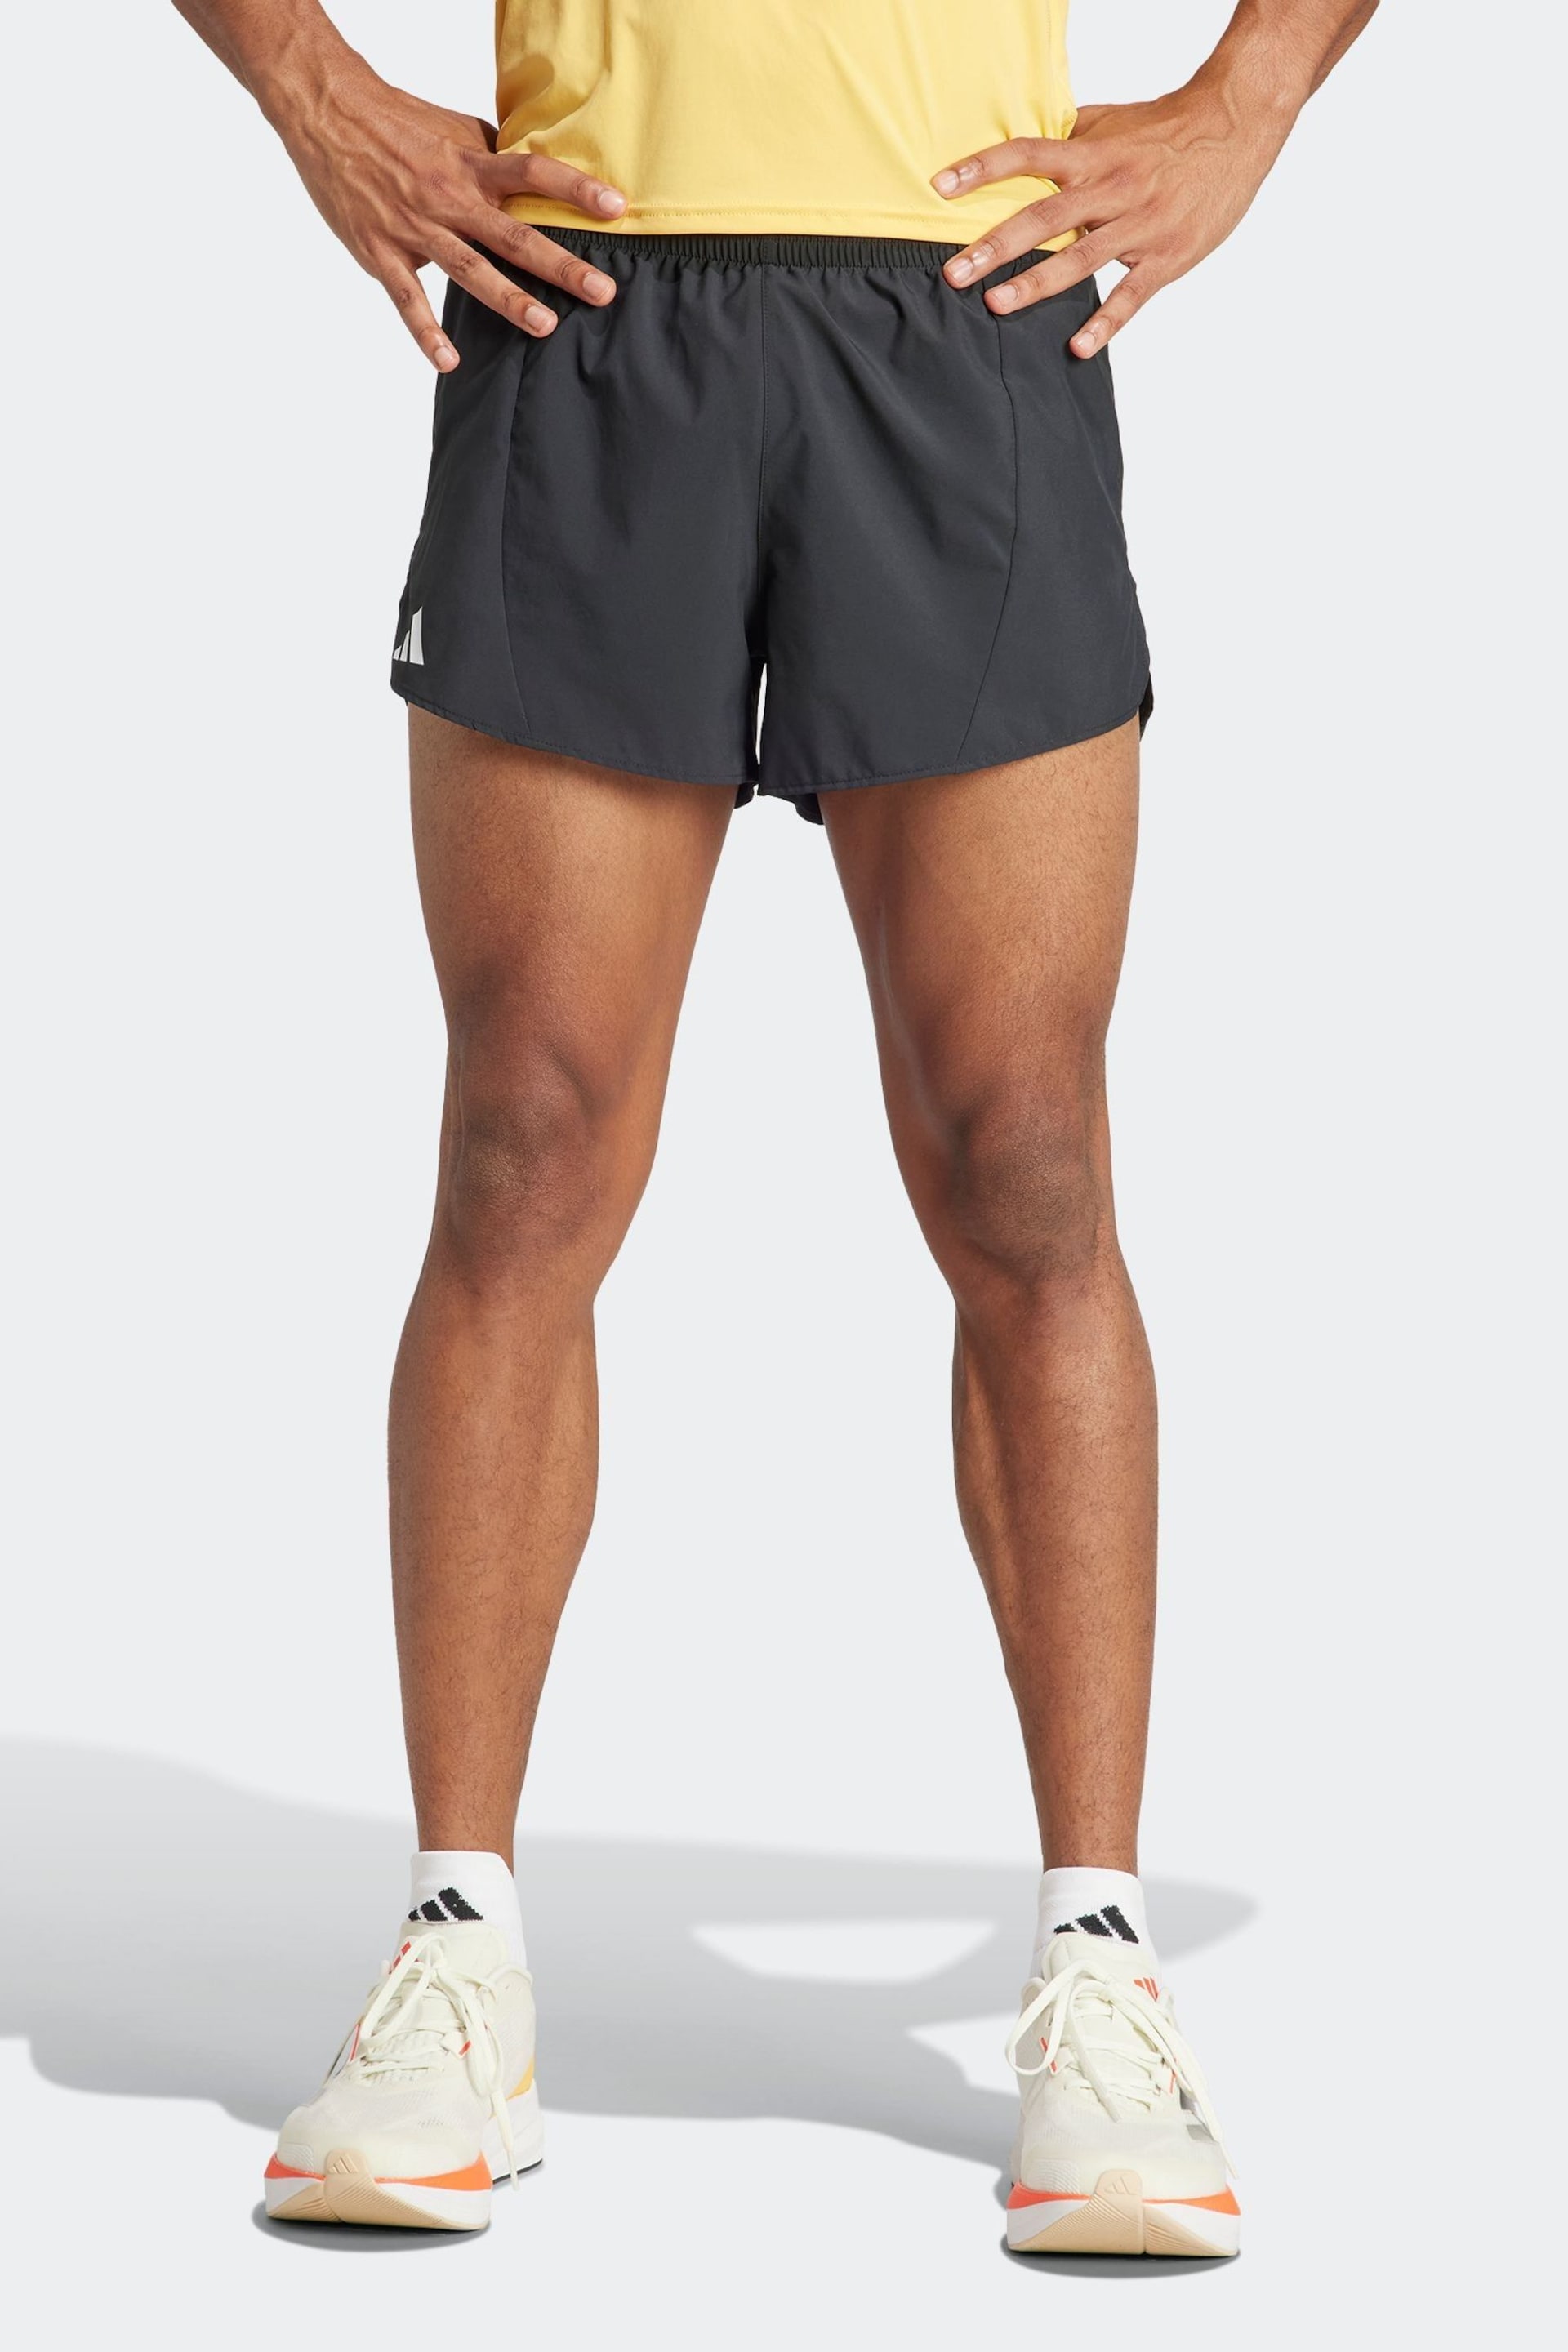 adidas Black Adizero Essential Running Shorts - Image 1 of 6